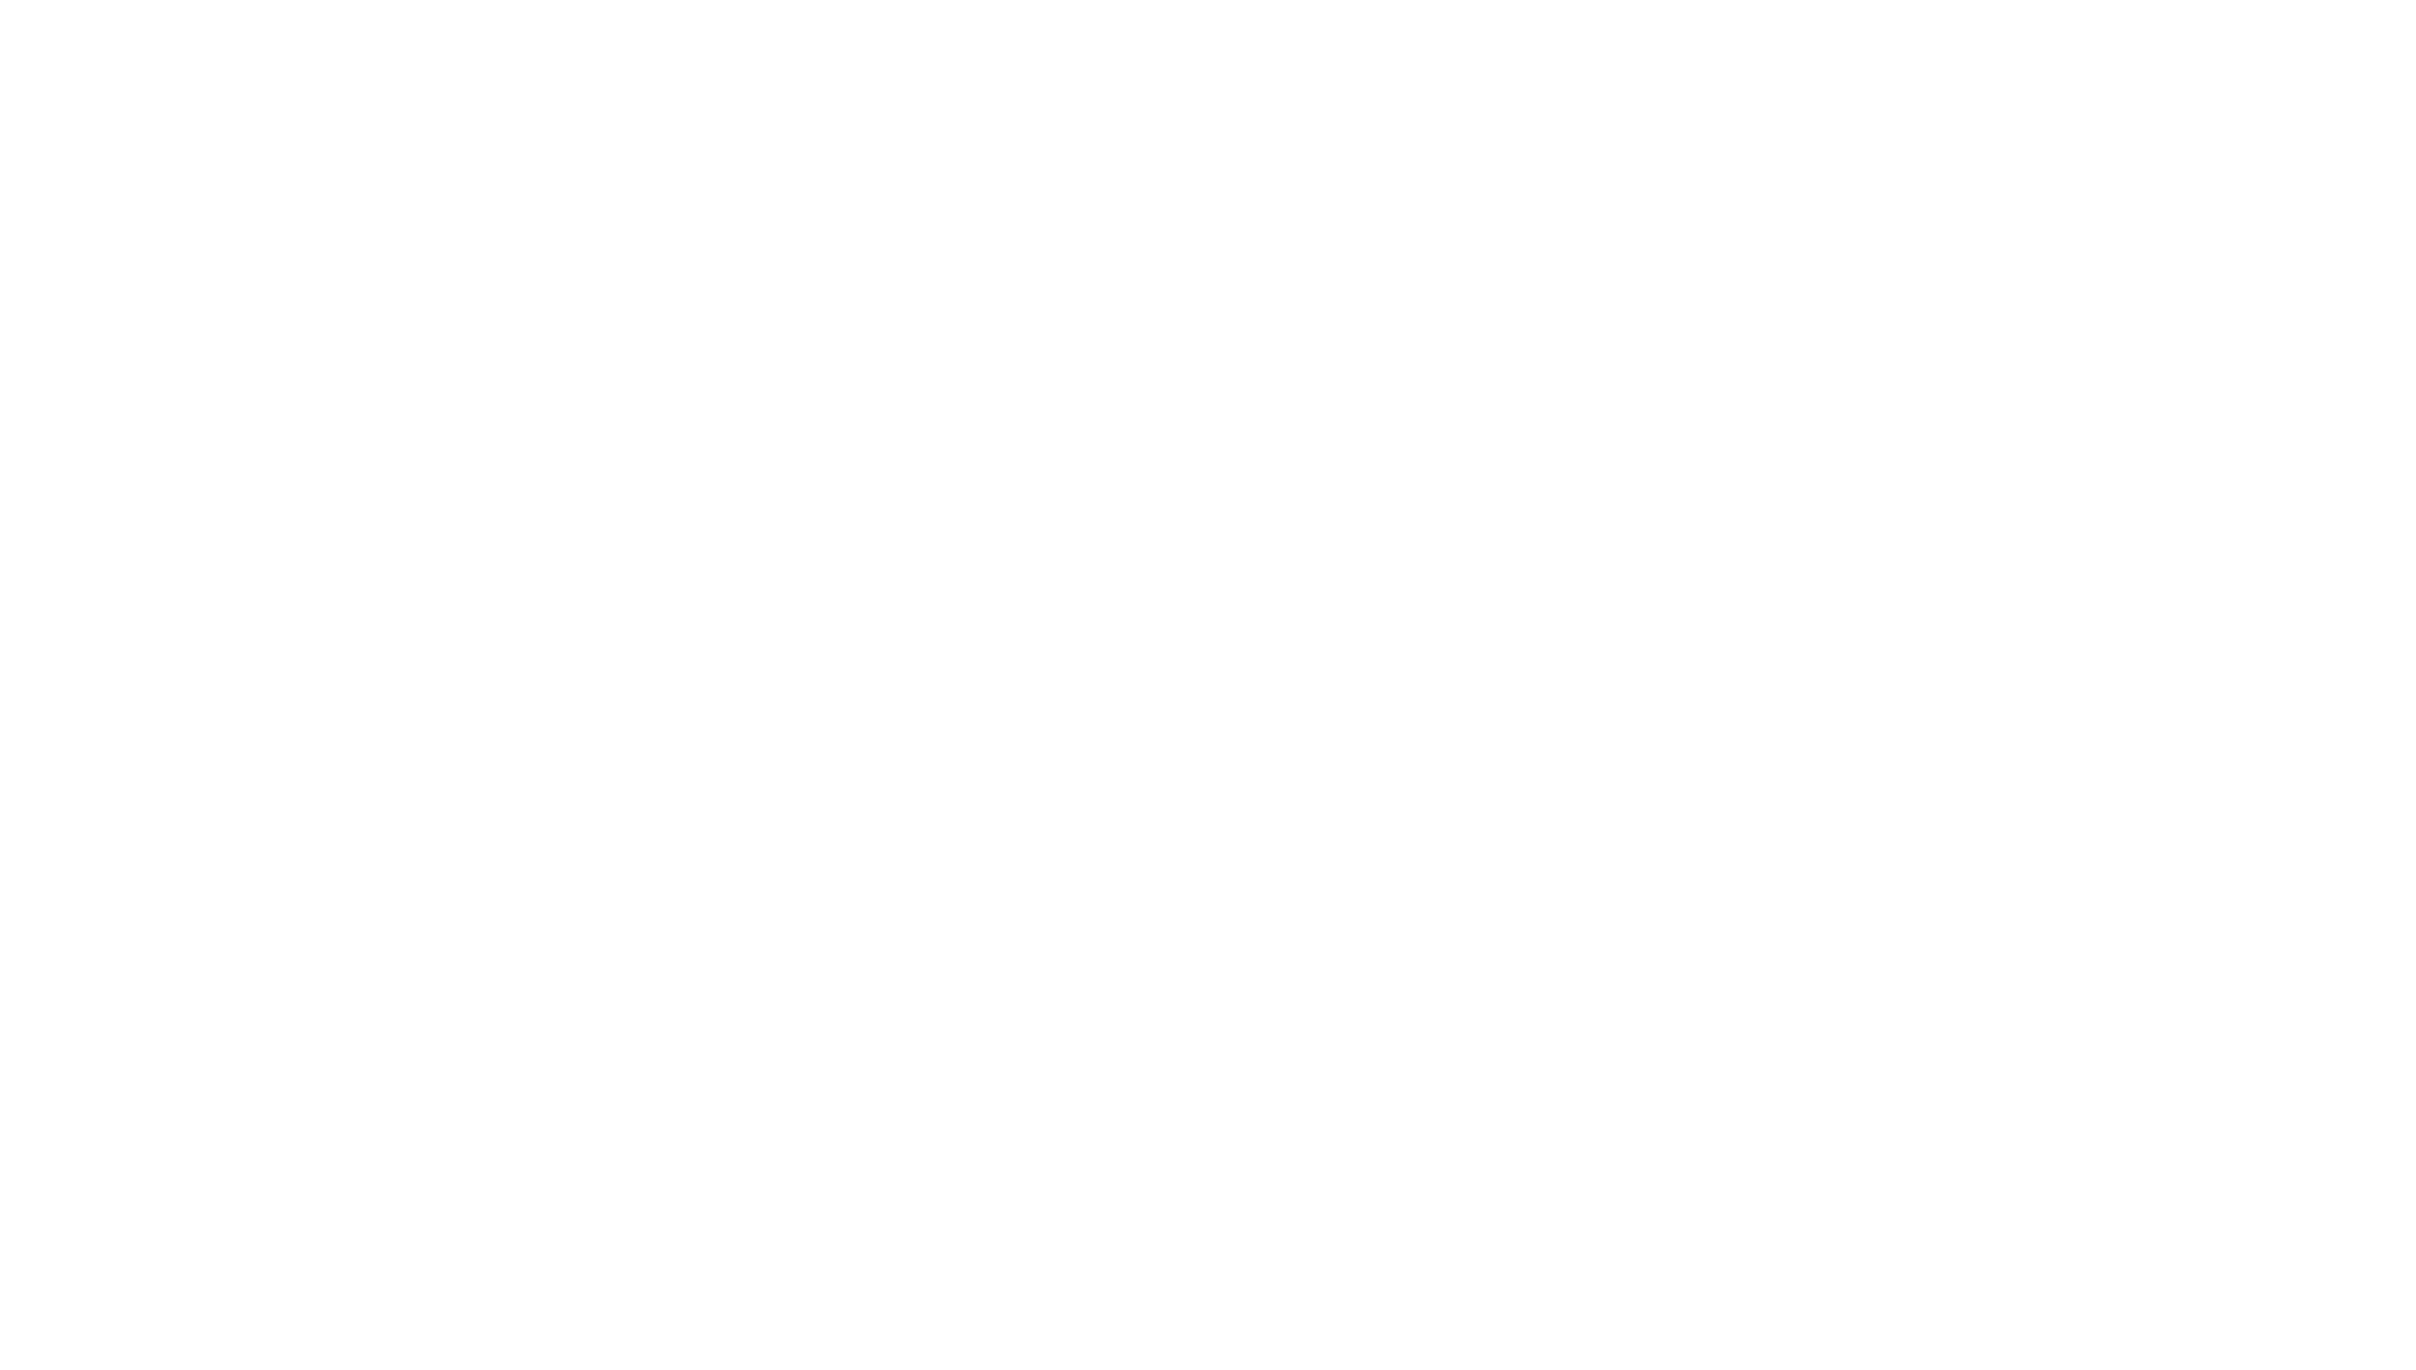 MUSCLE ATTACK × M&M スペシャルコラボツアー ～MMM～、開催決定!!